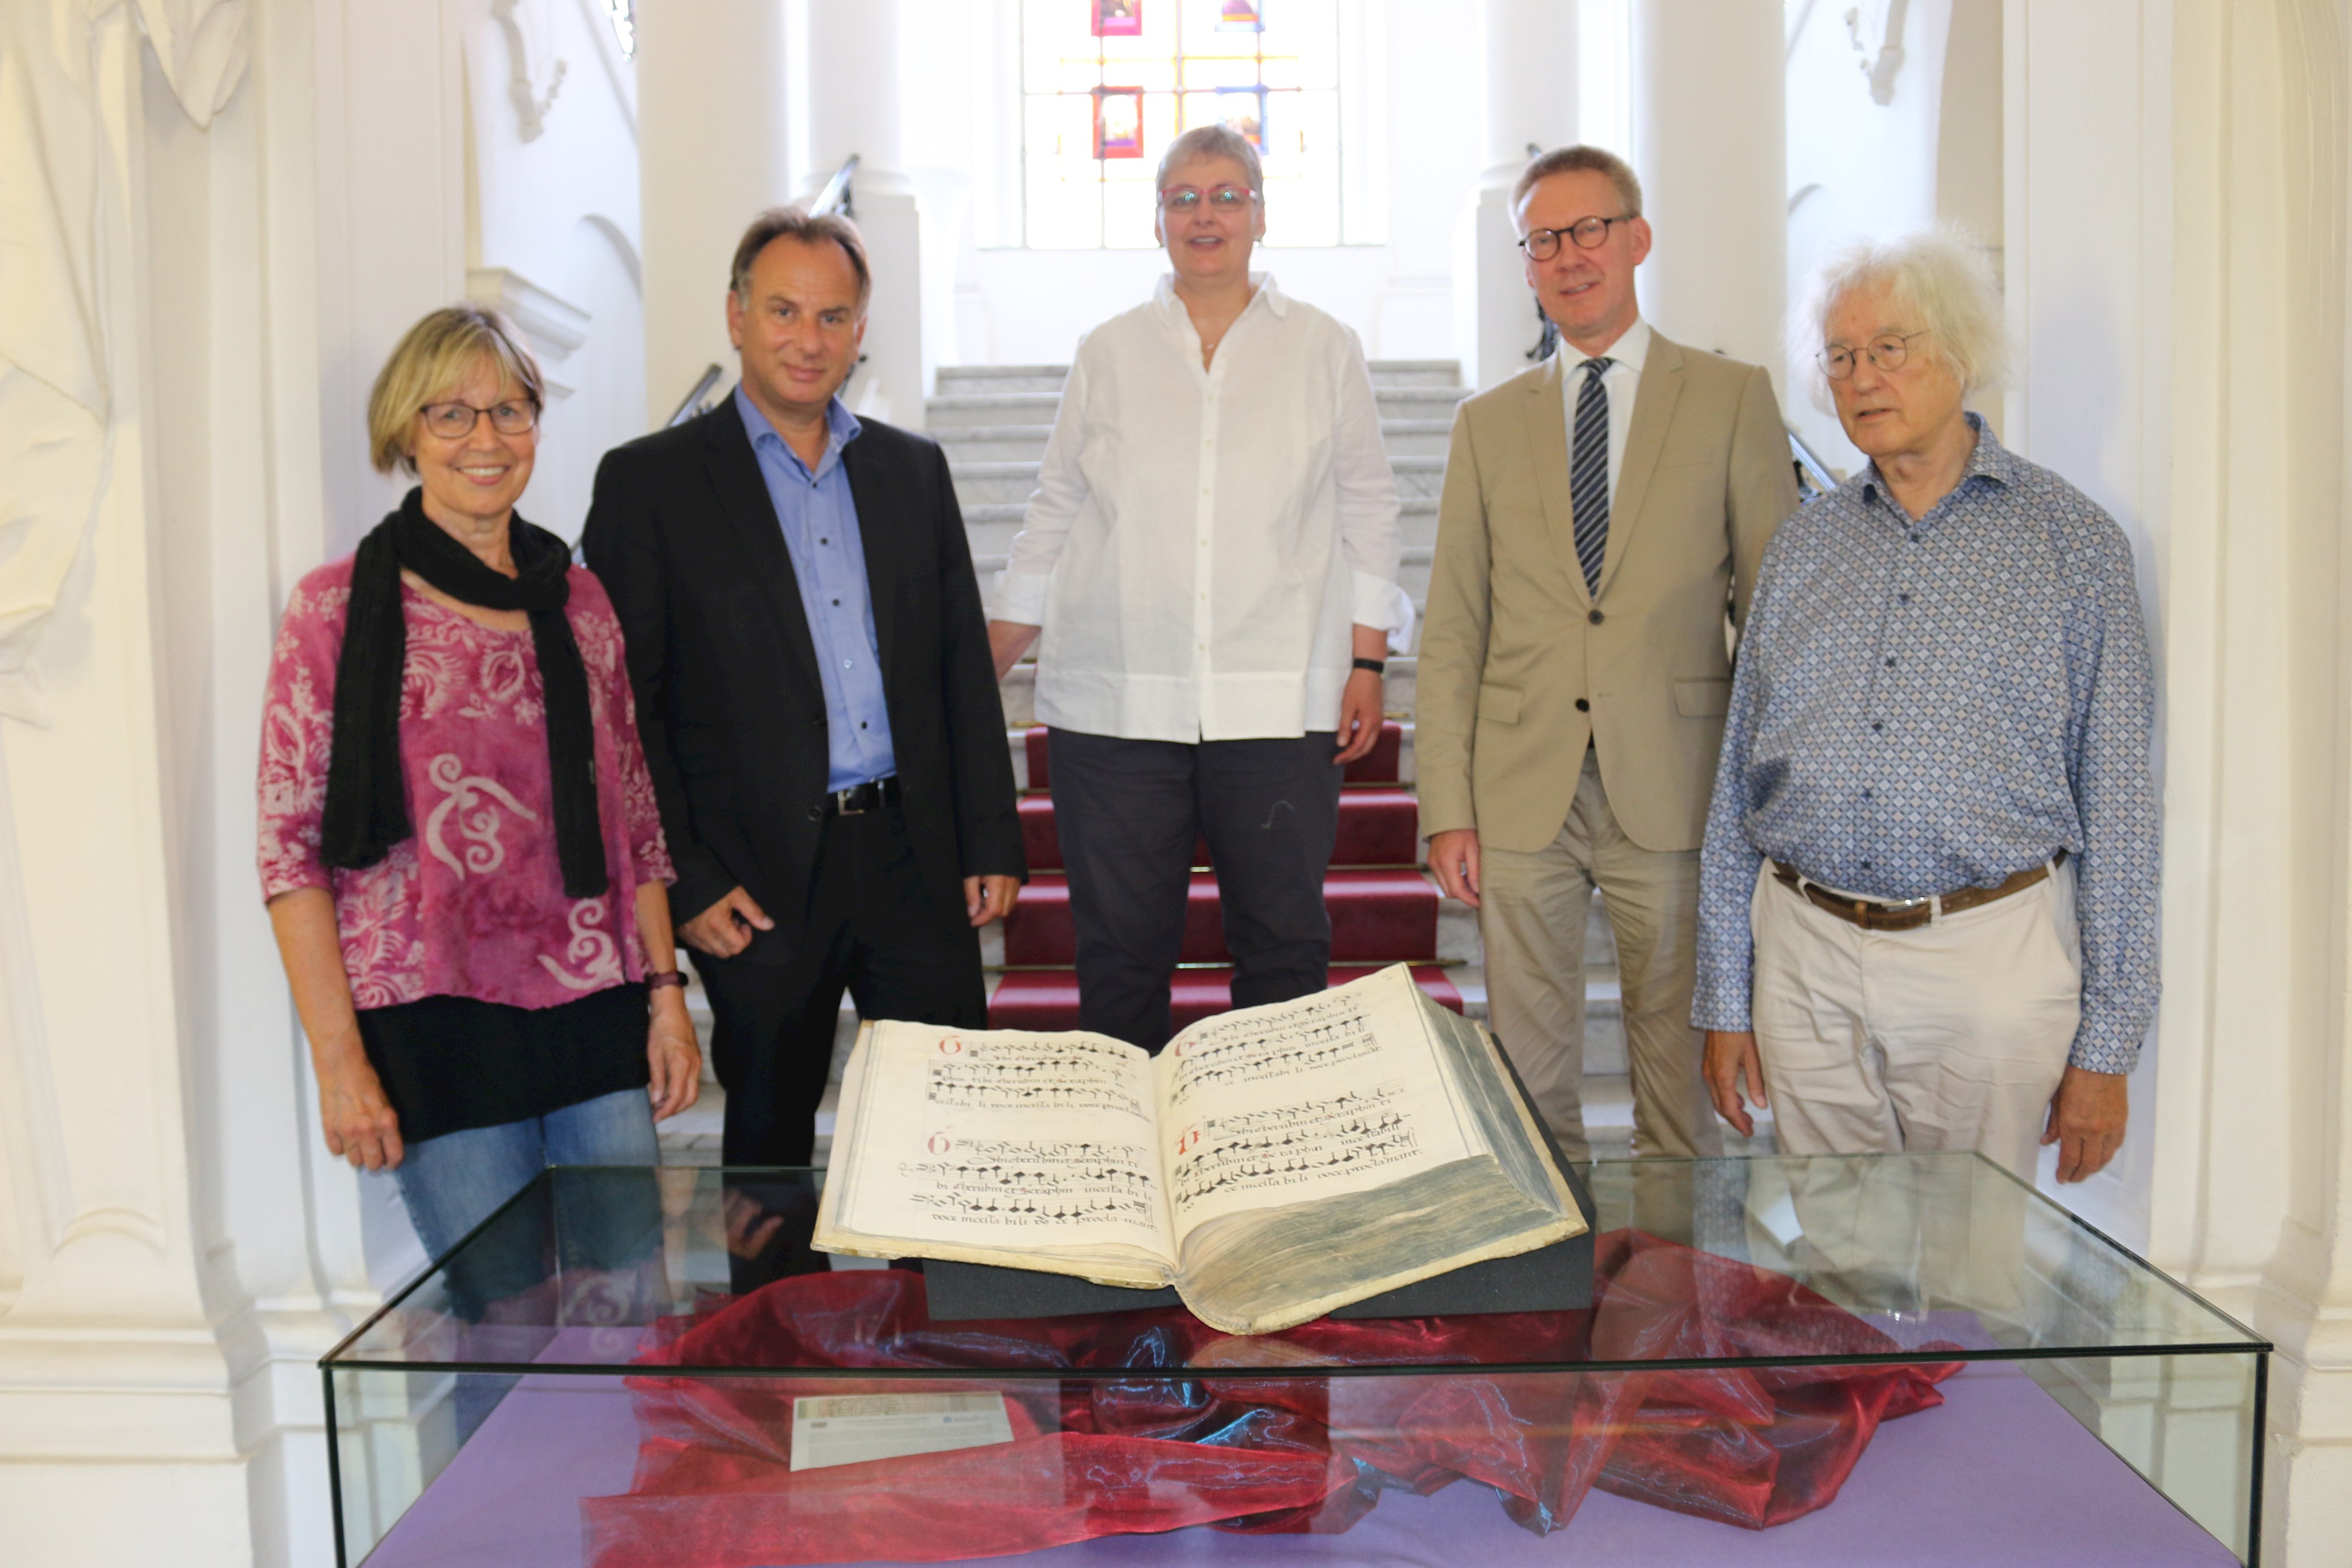 Liturgische Musikhandschrift aus Irsee in der Staats- und Stadtbibliothek Augsburg restauriert